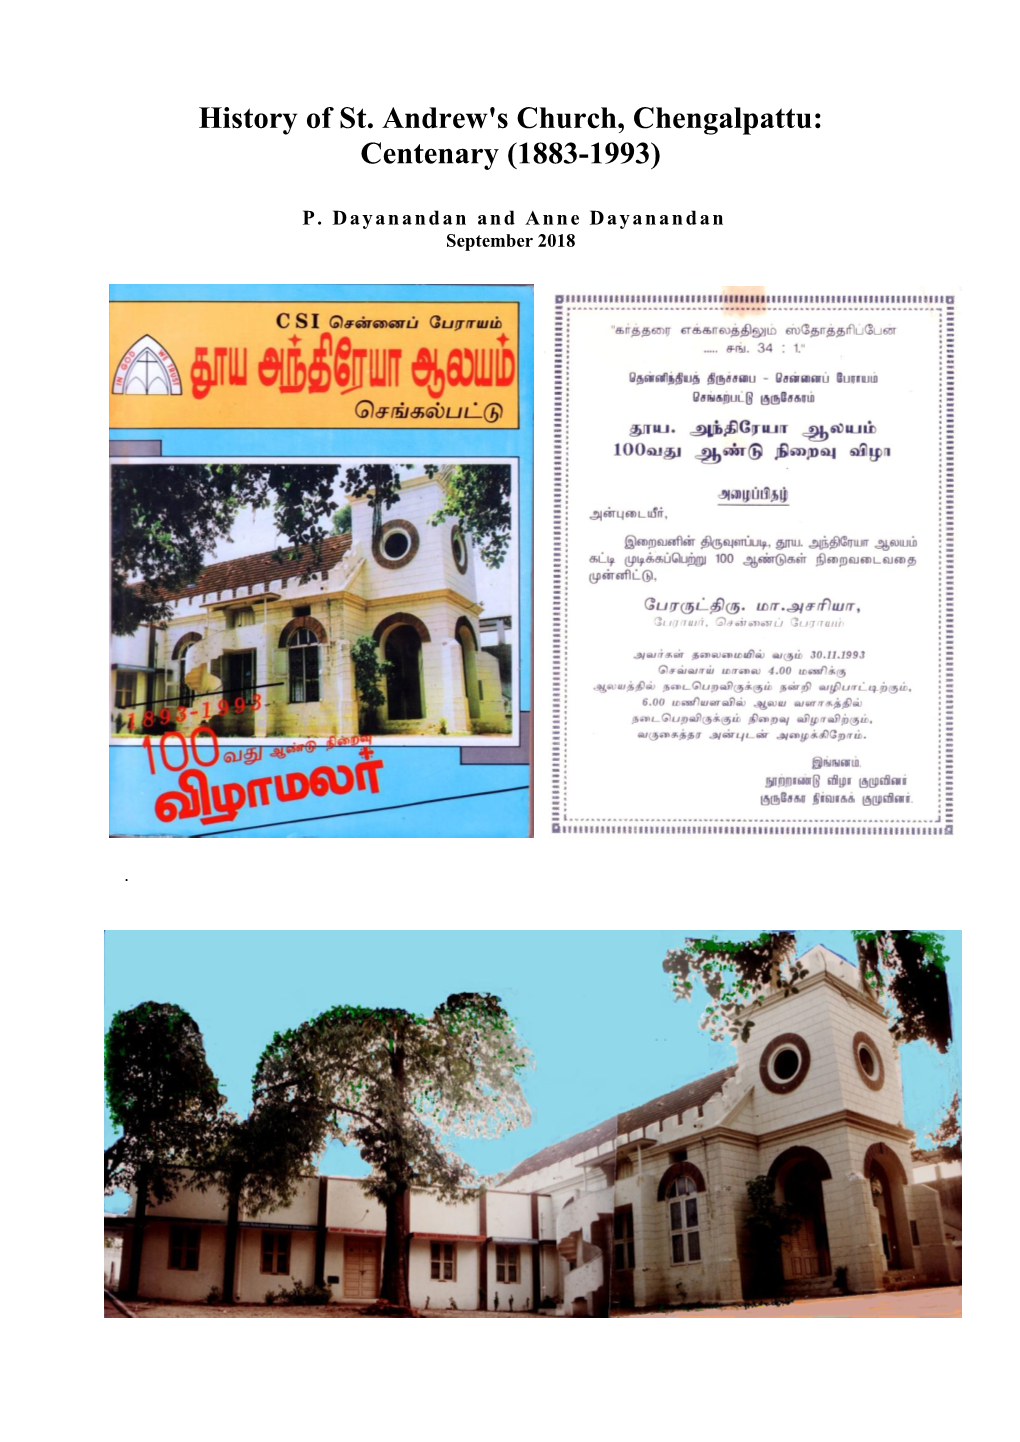 History of St. Andrew's Church, Chengalpattu: Centenary (1883-1993)